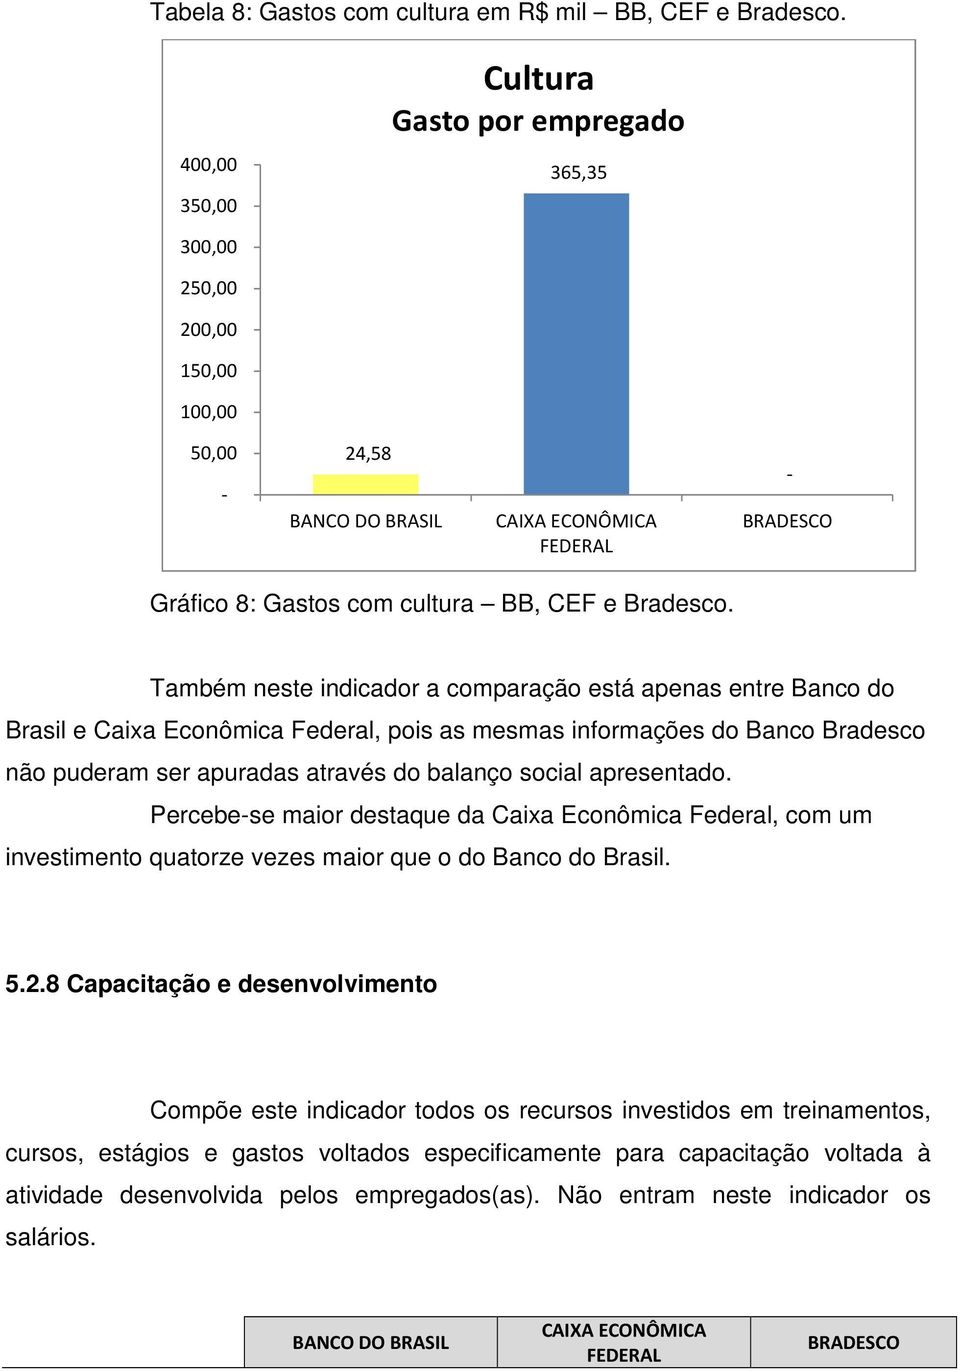 Também neste indicador a comparação está apenas entre Banco do Brasil e Caixa Econômica Federal, pois as mesmas informações do Banco Bradesco não puderam ser apuradas através do balanço social